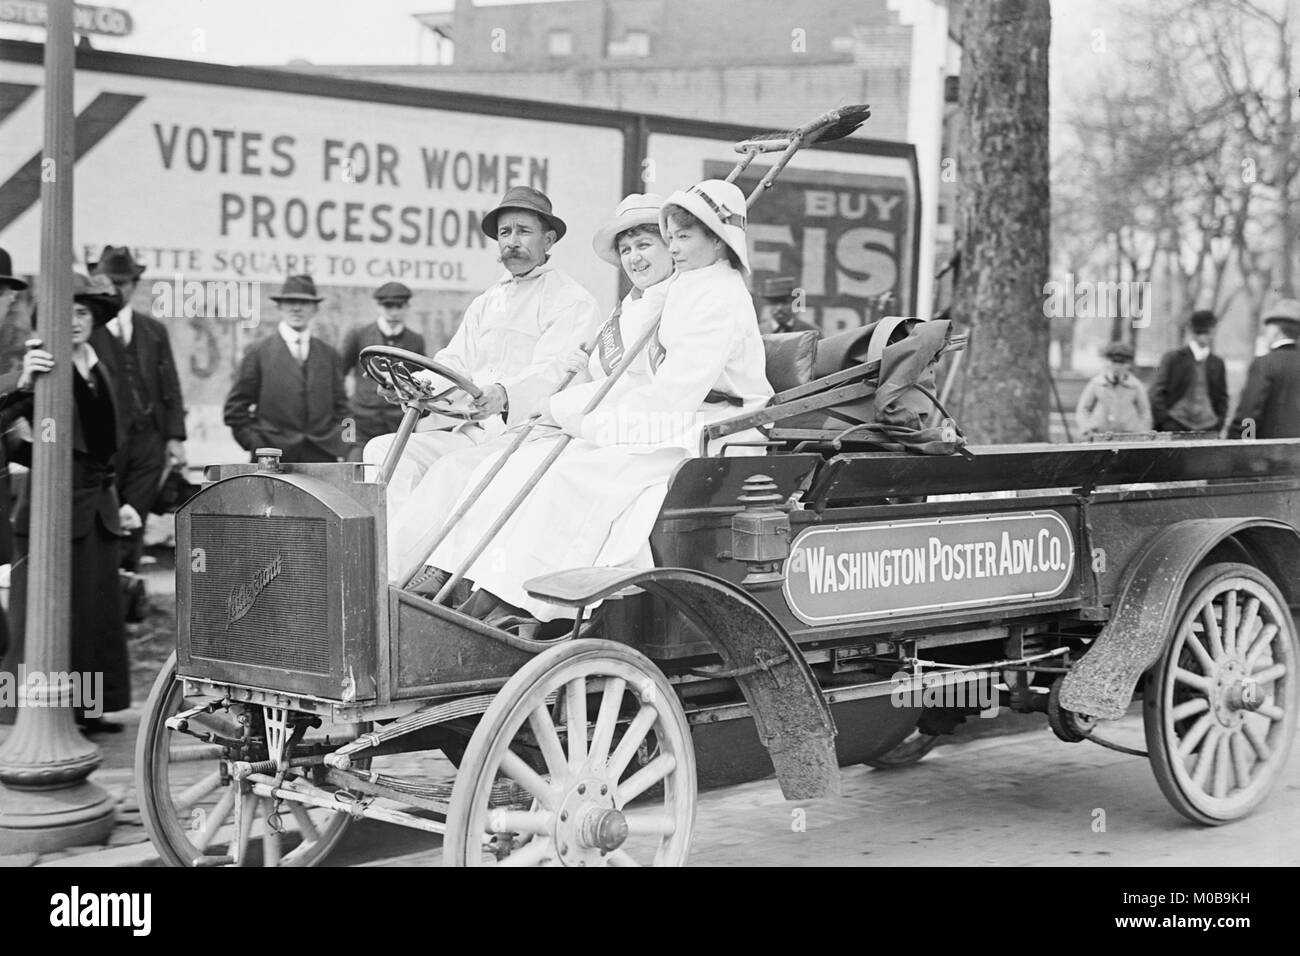 Washington affiche publicitaire de camion de l'entreprise réalise les suffragettes Banque D'Images